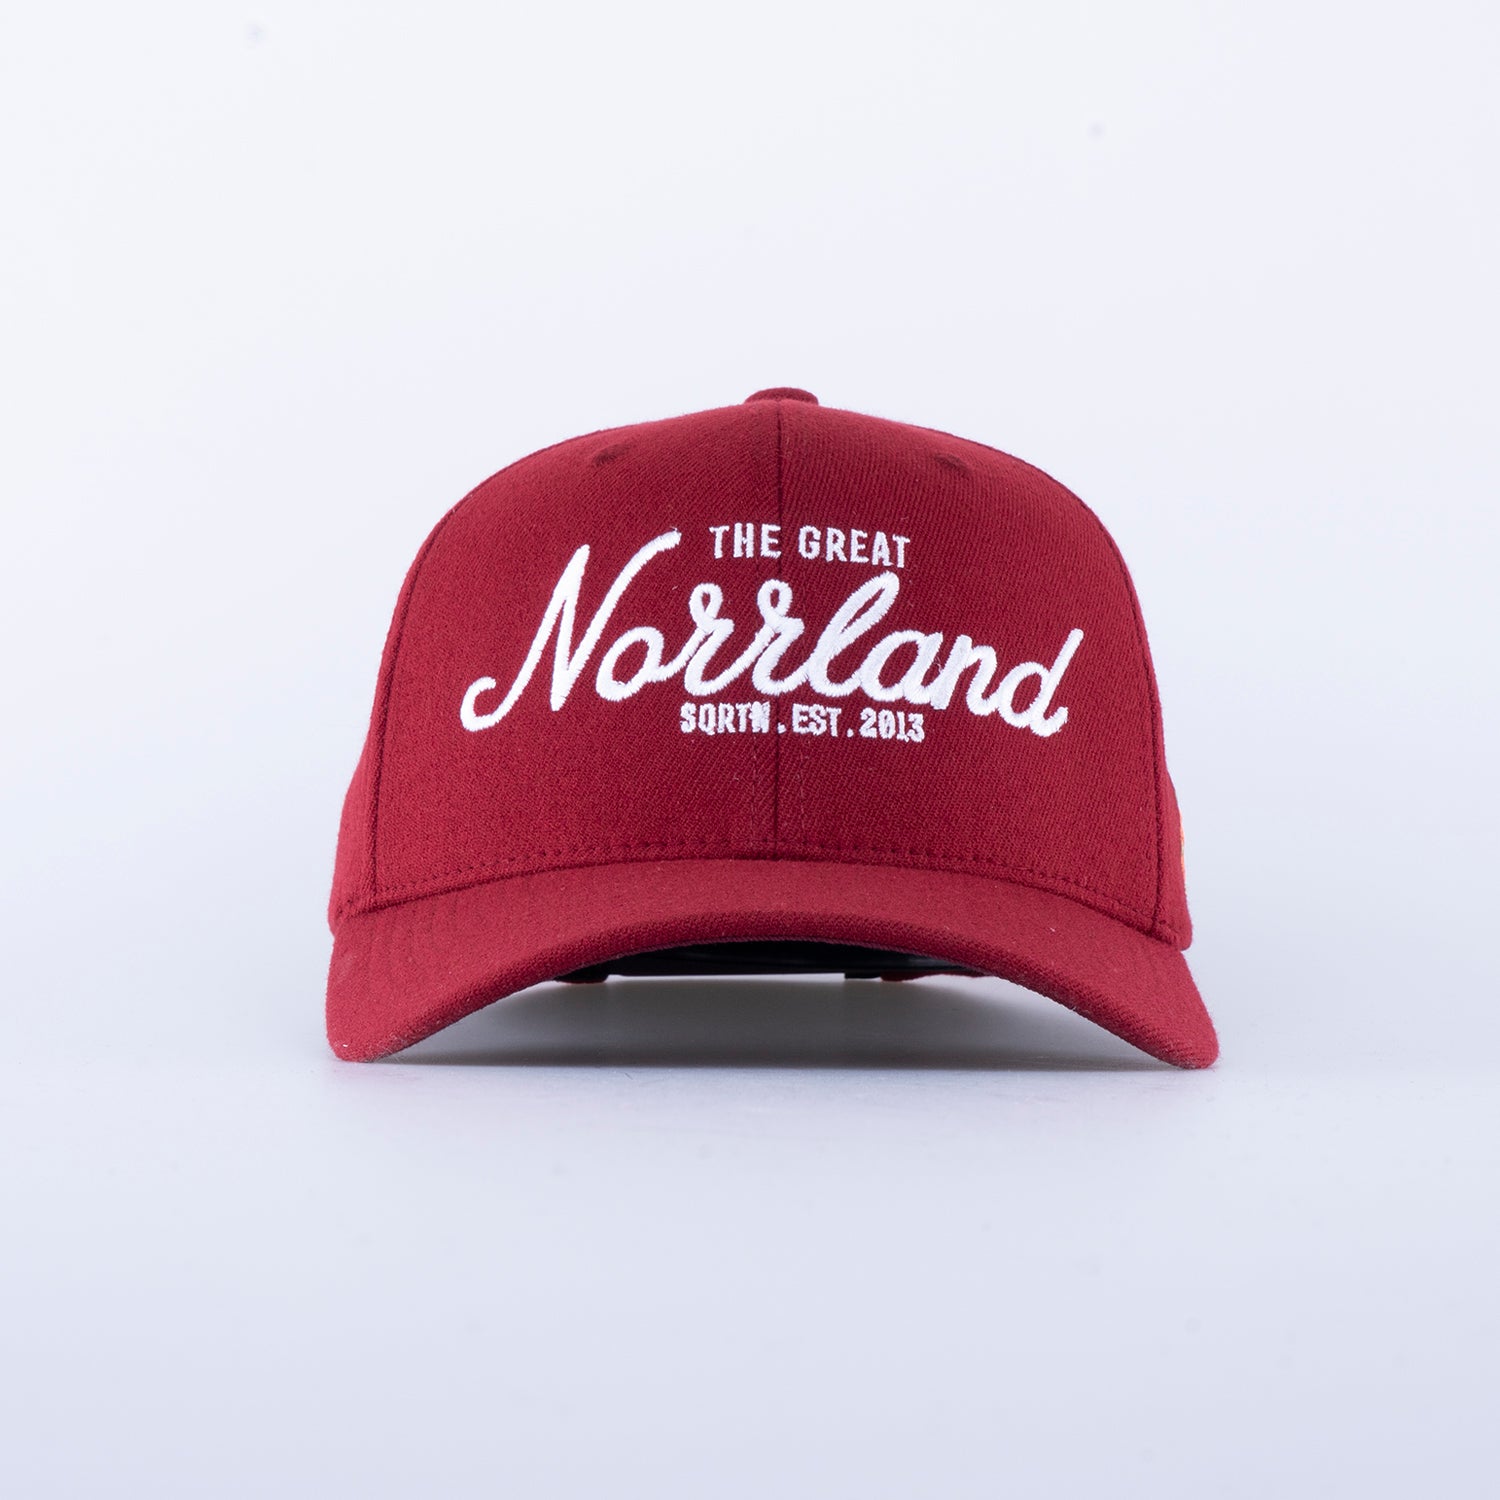 GREAT NORRLAND 120 CAP - MAROON